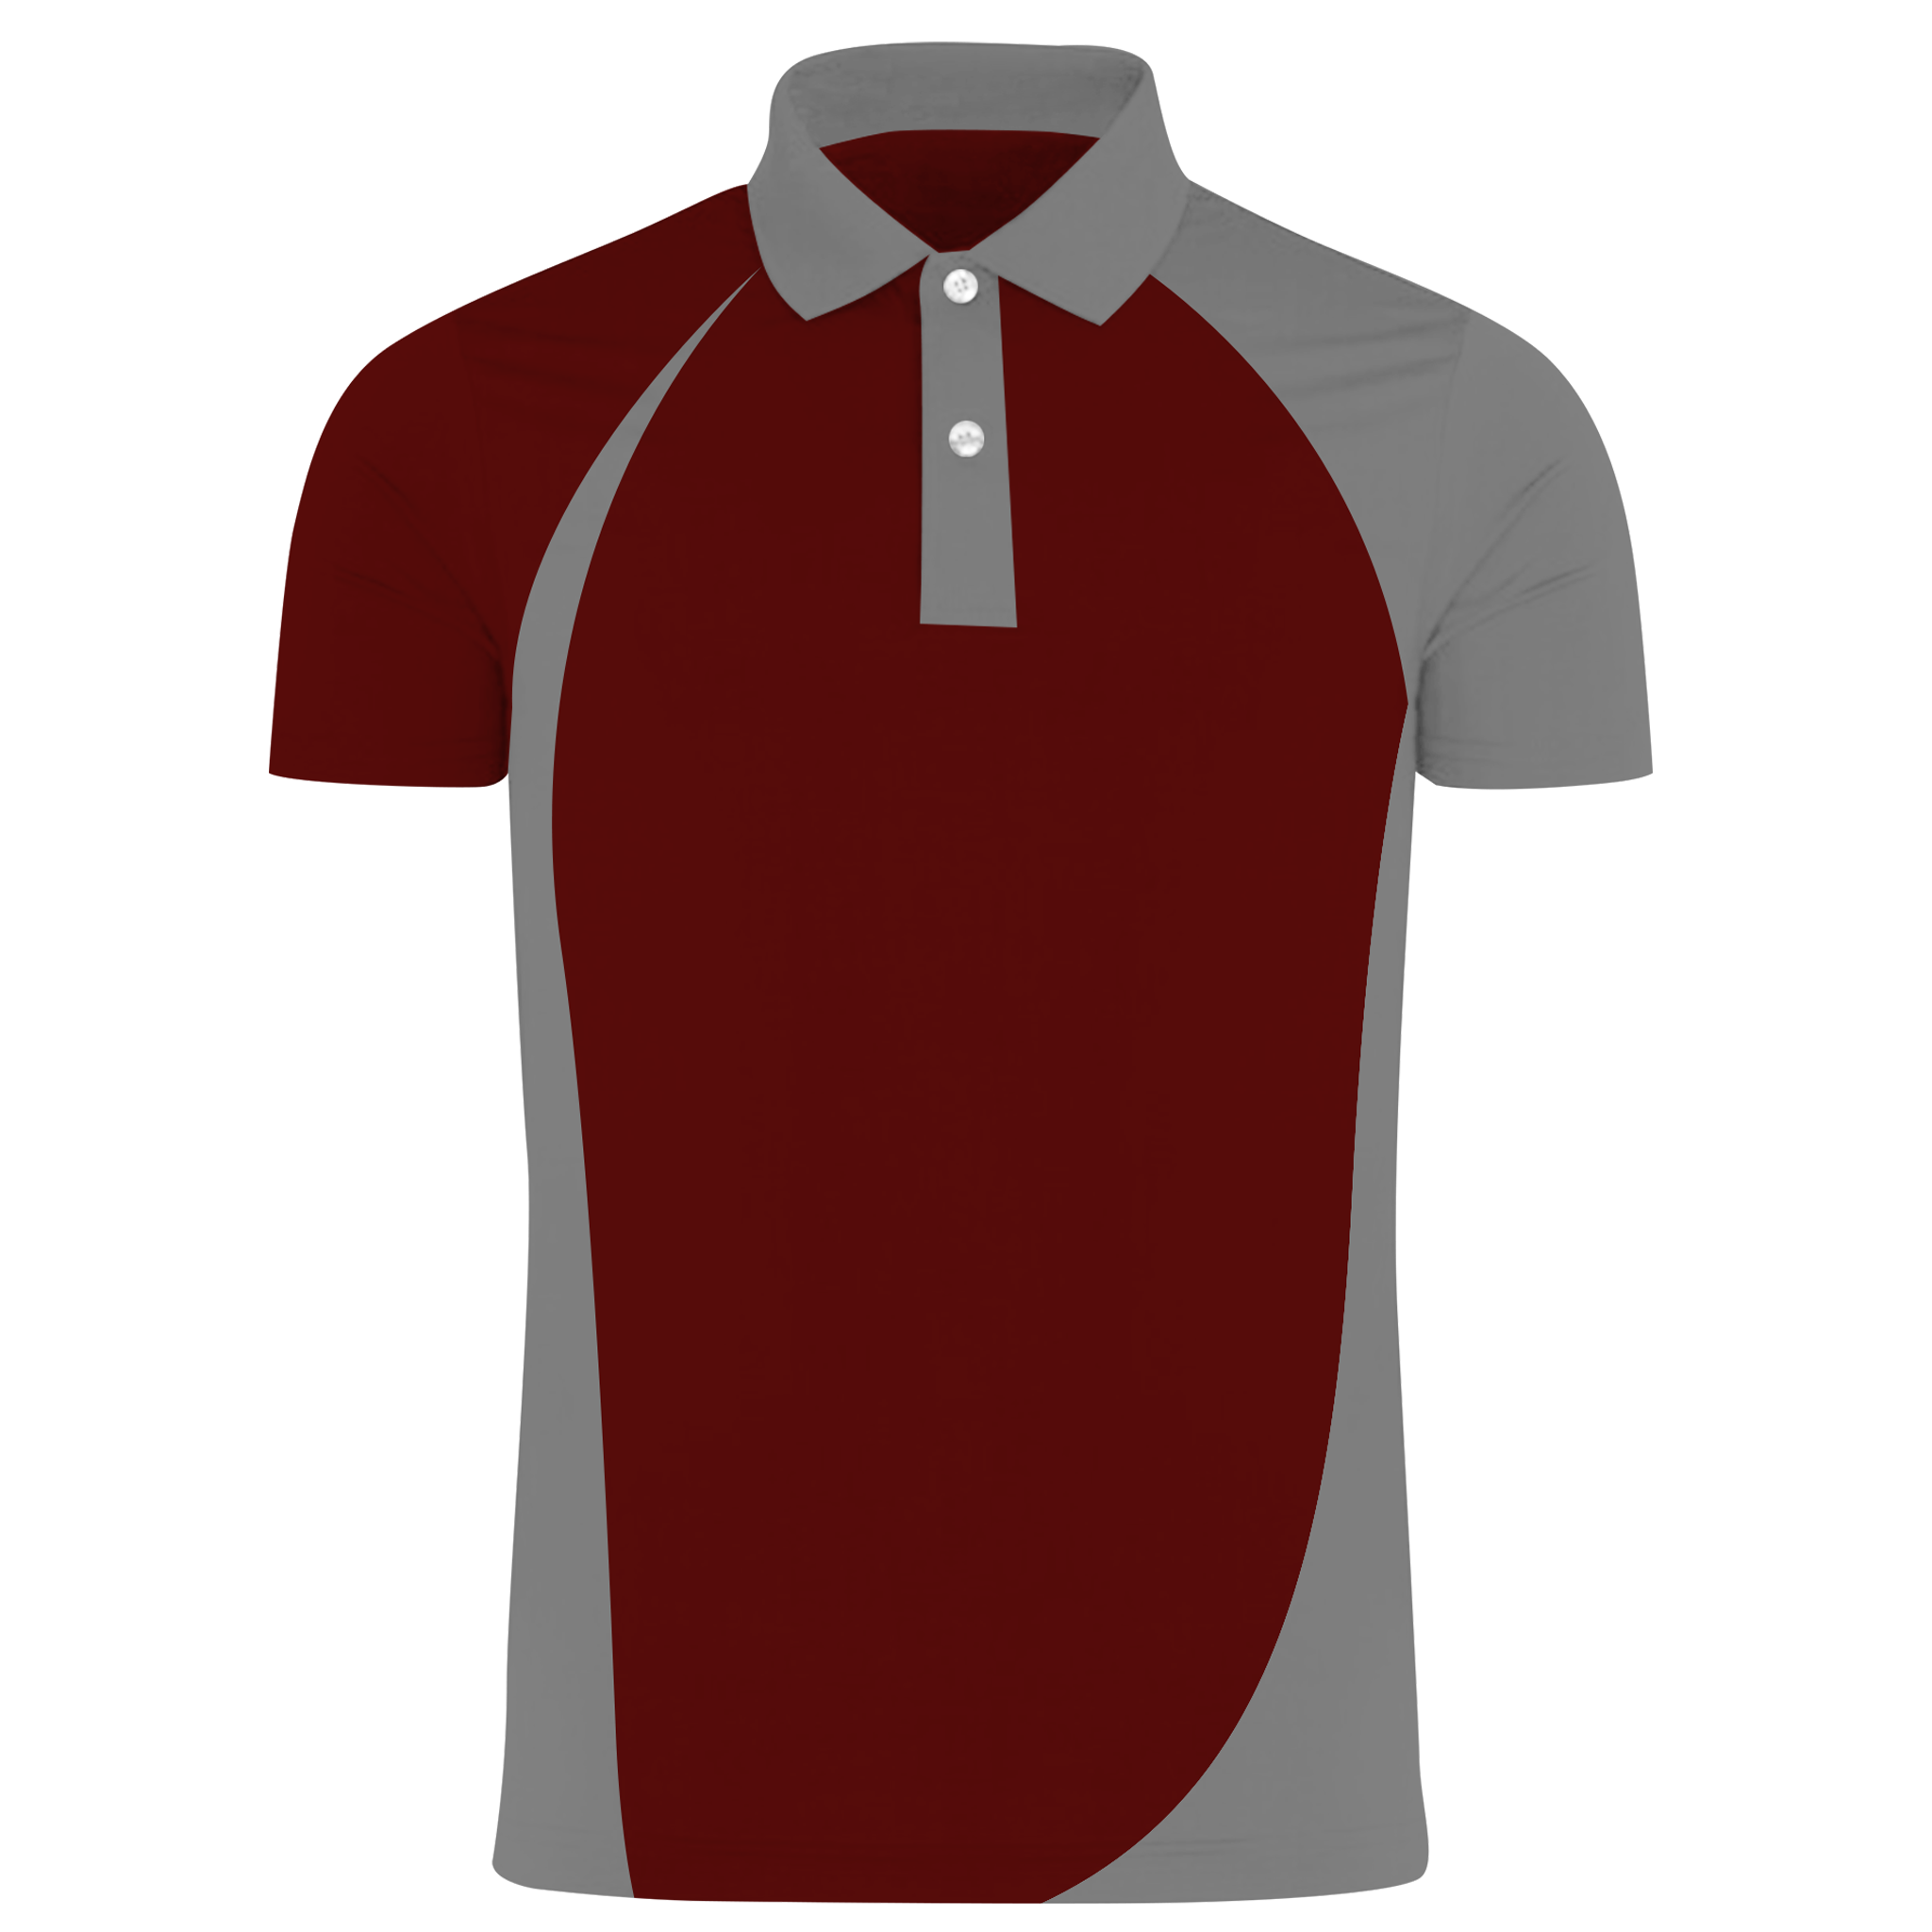 Custom Dri Fit Shirts (DP21)